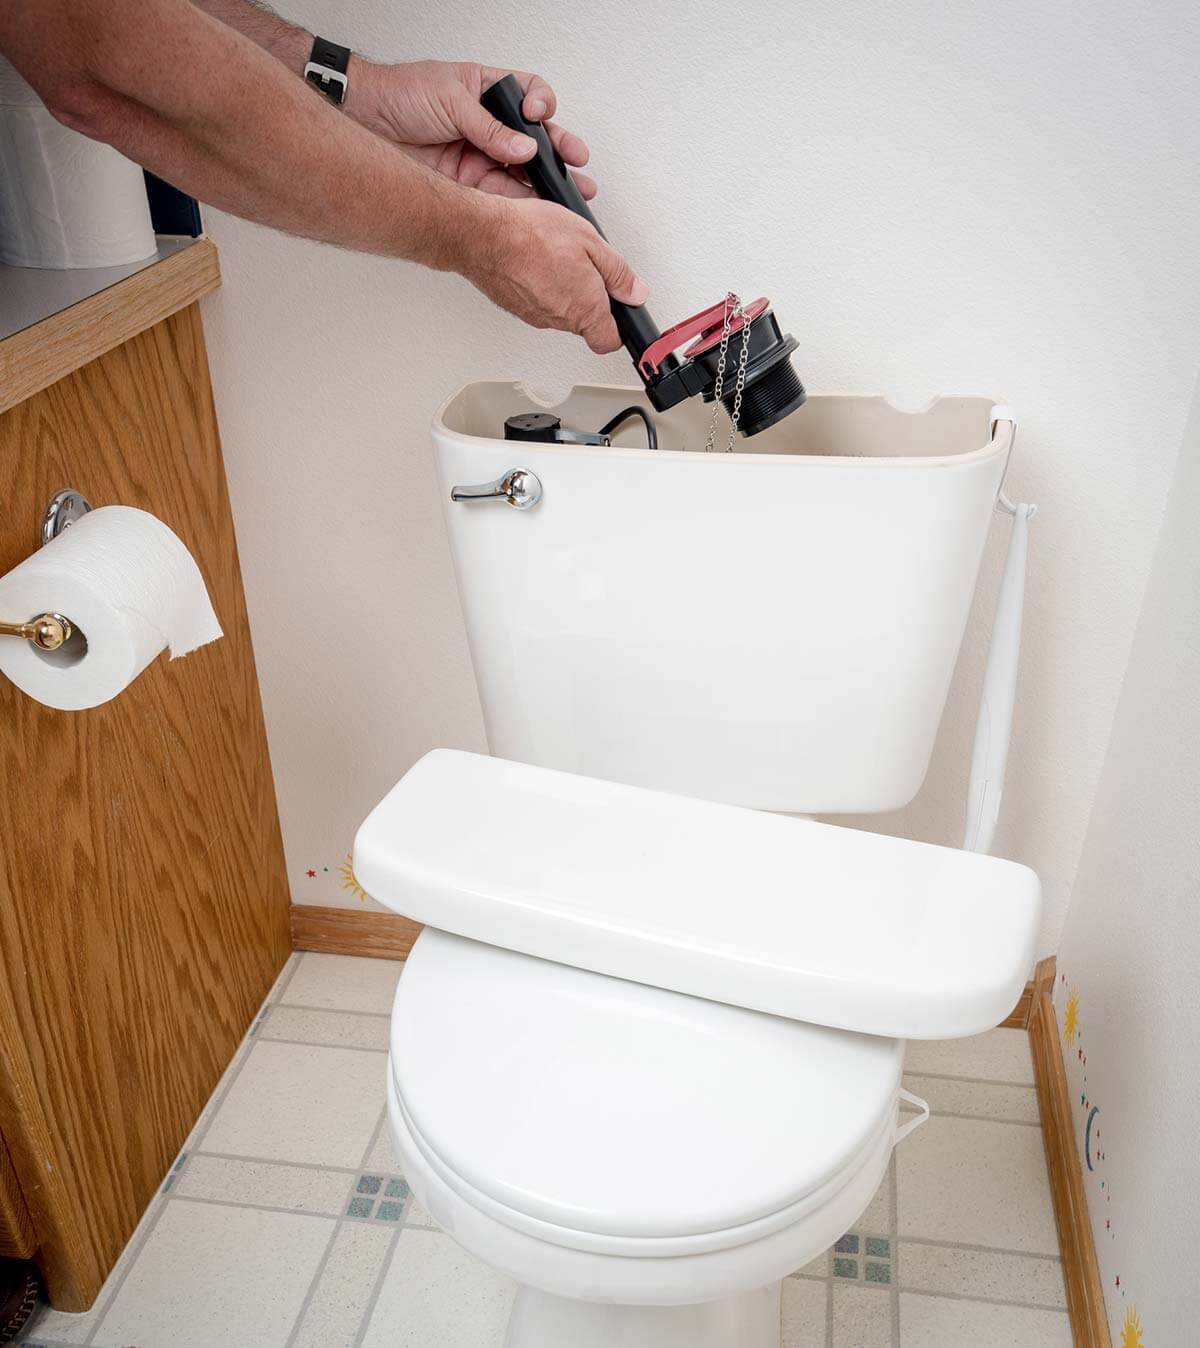 Plumbers 911 emergency toilet repair